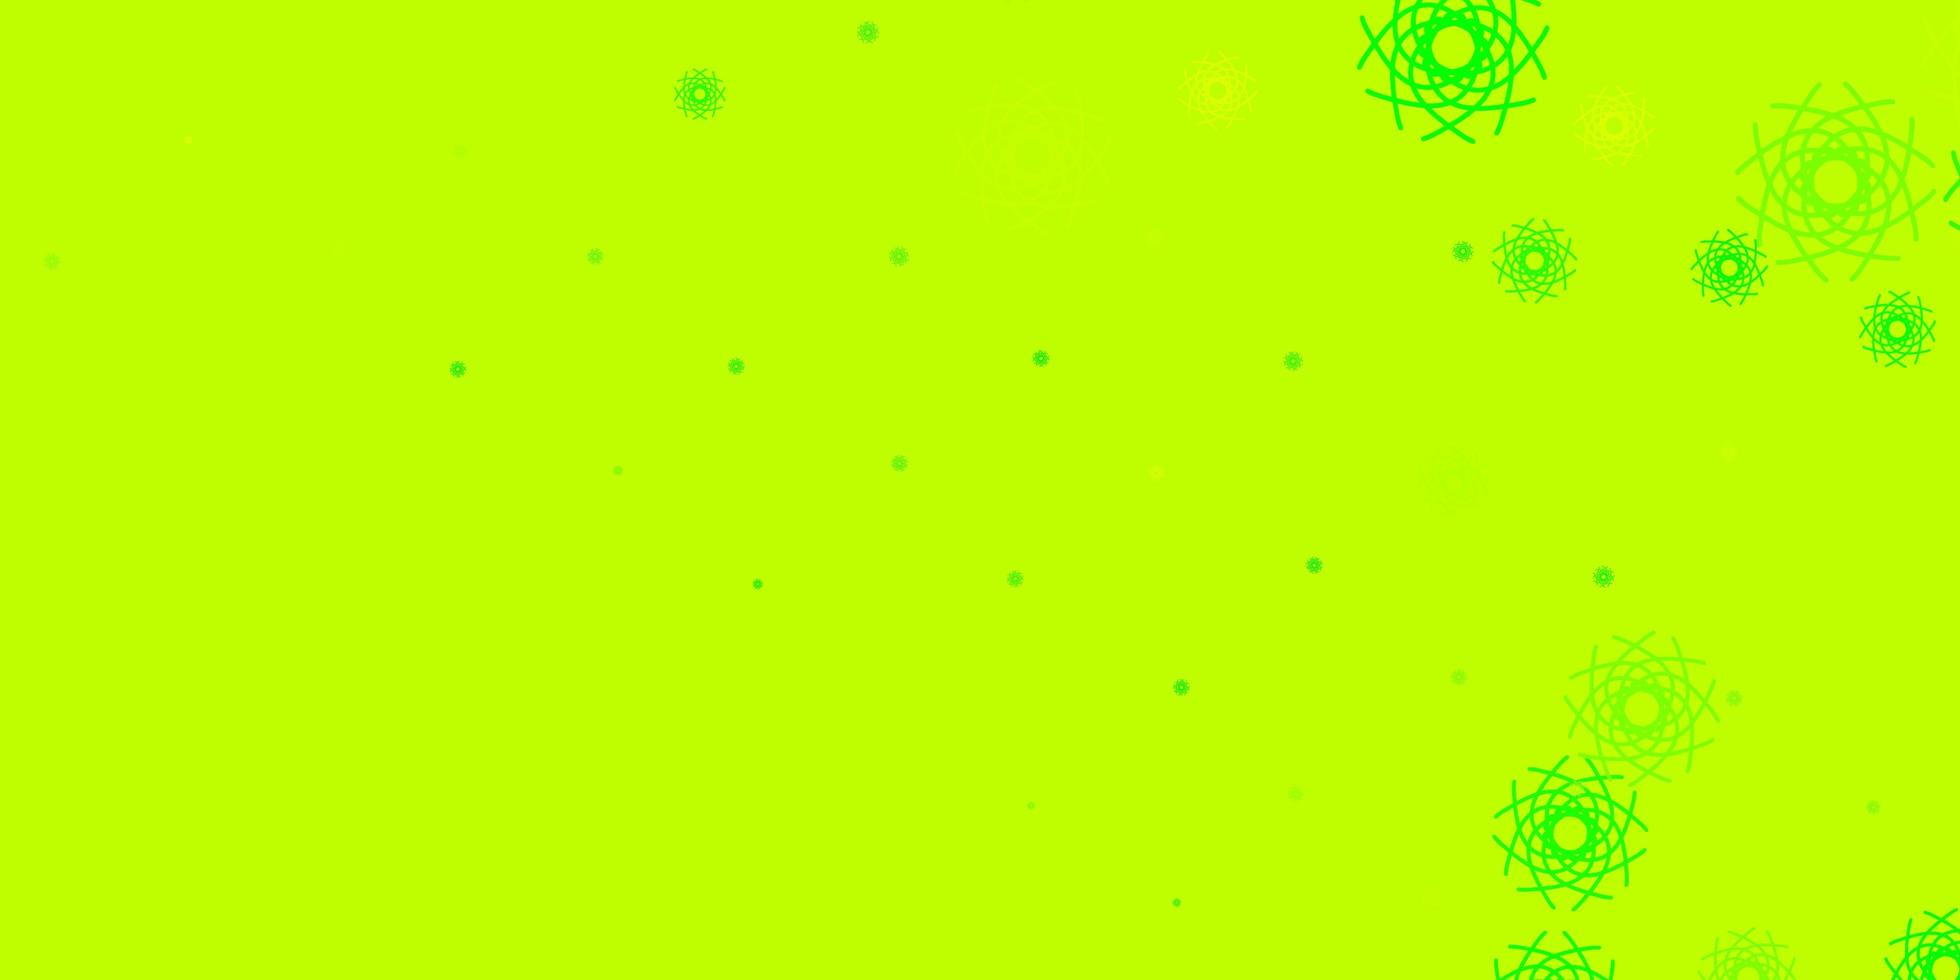 Fondo de vector verde claro, amarillo con formas aleatorias.